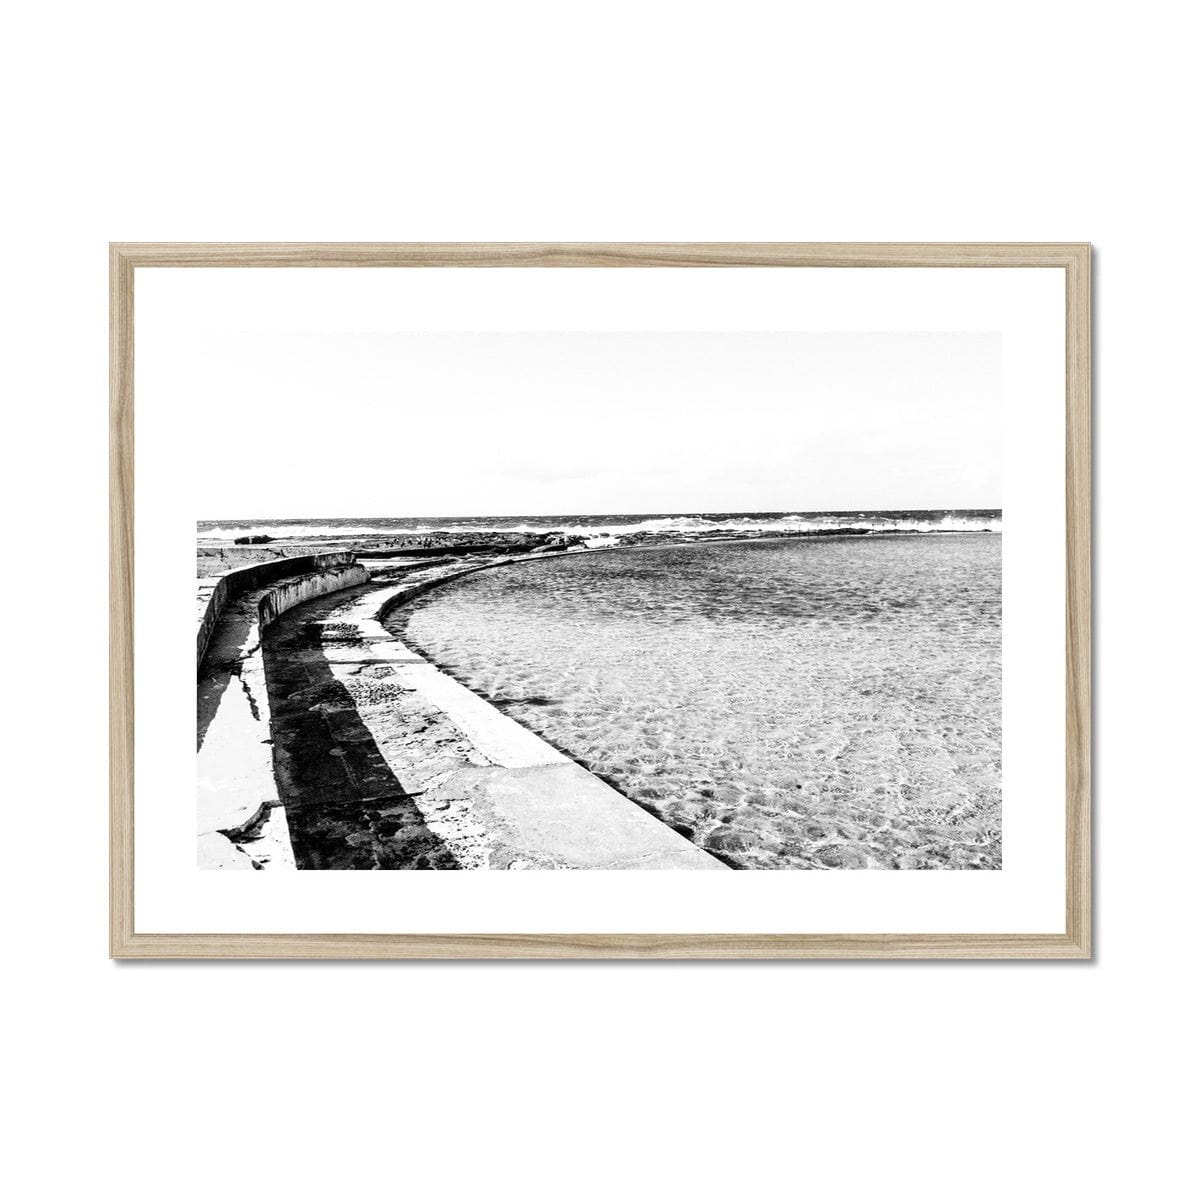 Adam Davies Framed 28"x20" / Natural Frame Black & White Ocean Framed Pool & Mounted Print